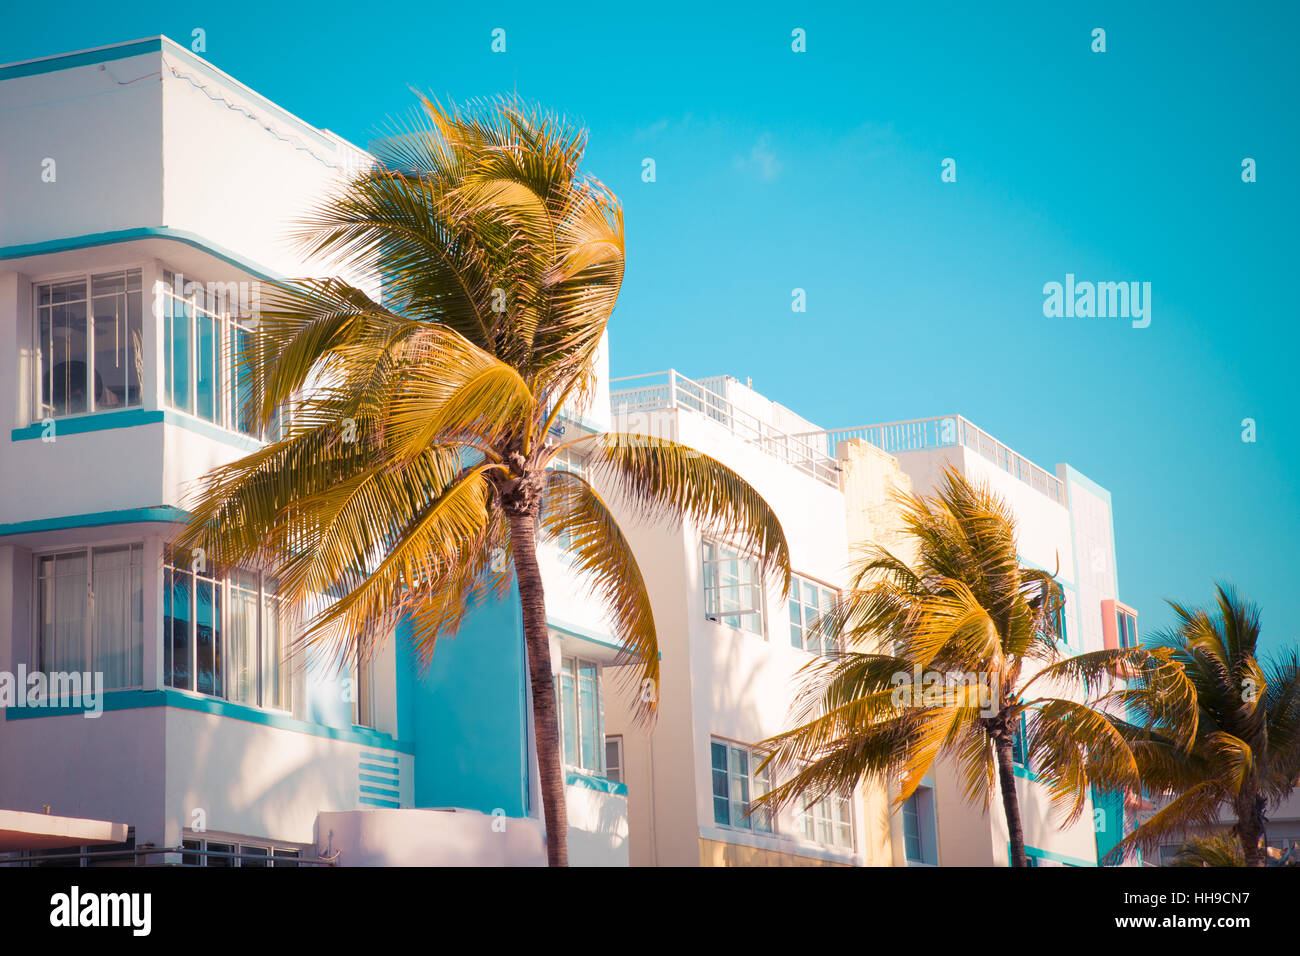 Vintage-Stil-Image der Palme und Art-Deco-Architektur von South Beach Miami Florida mit Retro-Ton Stockfoto